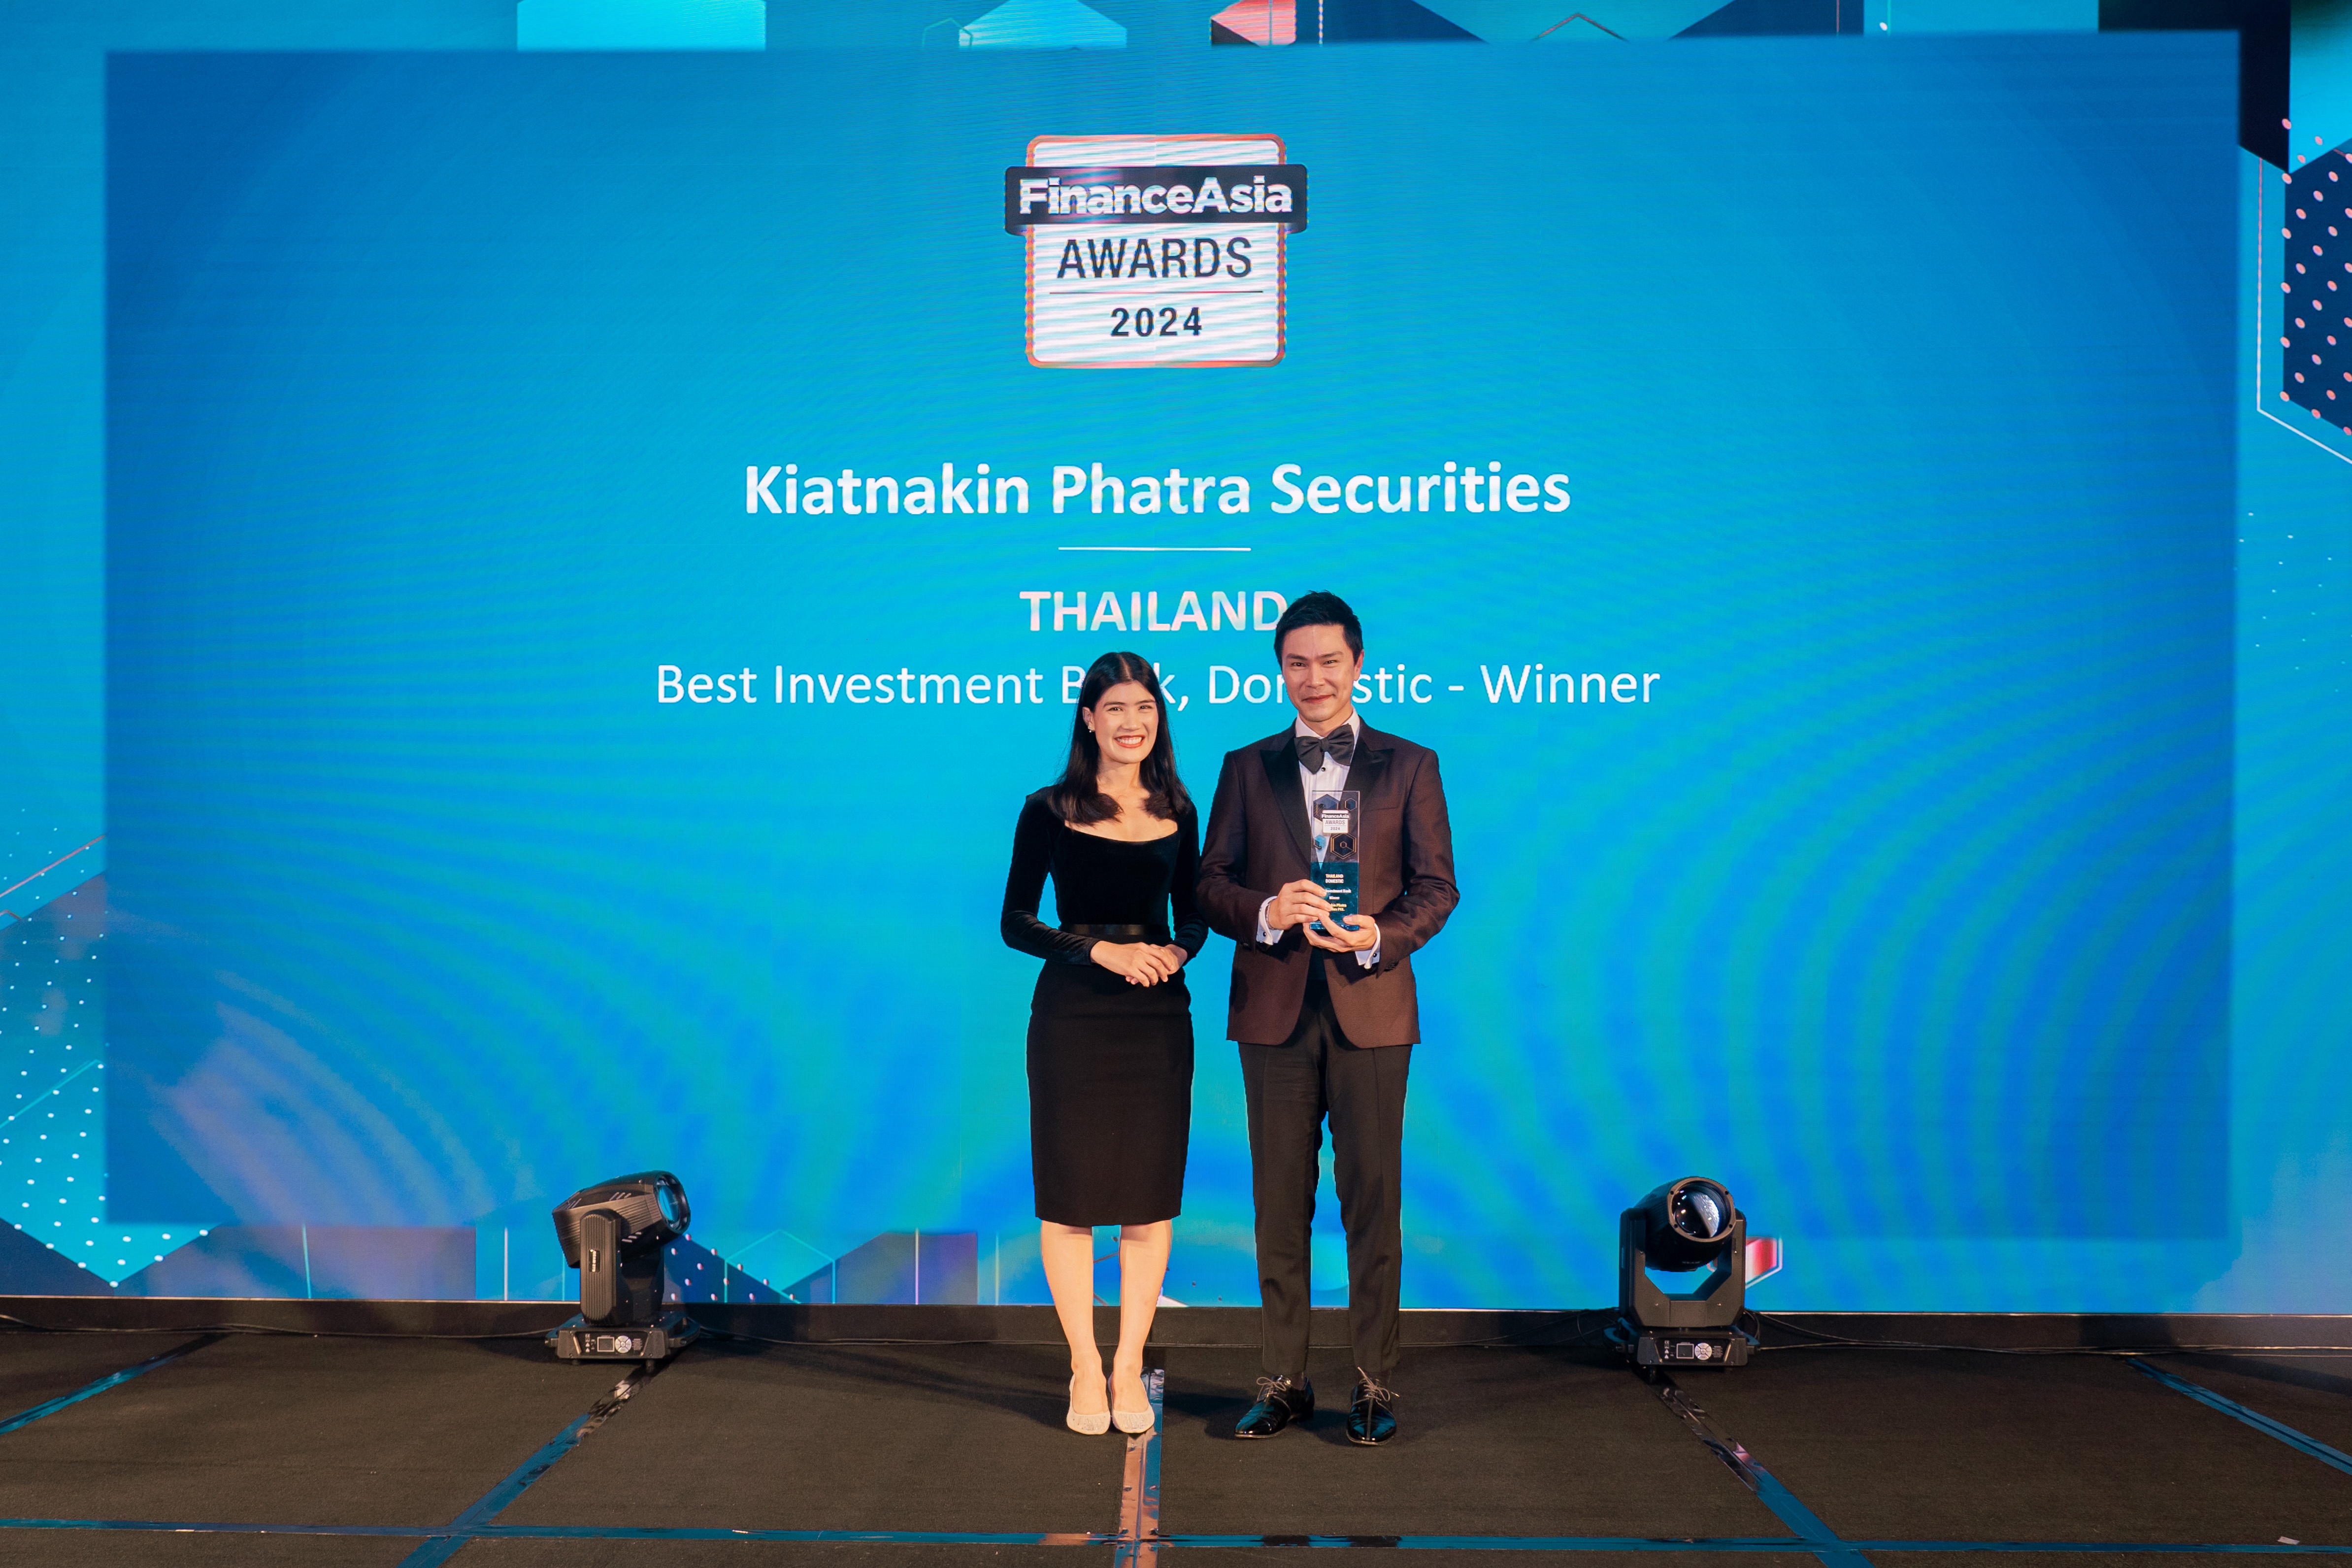 บล.เกียรตินาคินภัทร วานิชธนกิจแกร่ง ครอง Best Investment Bank in Thailand จาก FinanceAsia Awards เป็นปีที่ 9